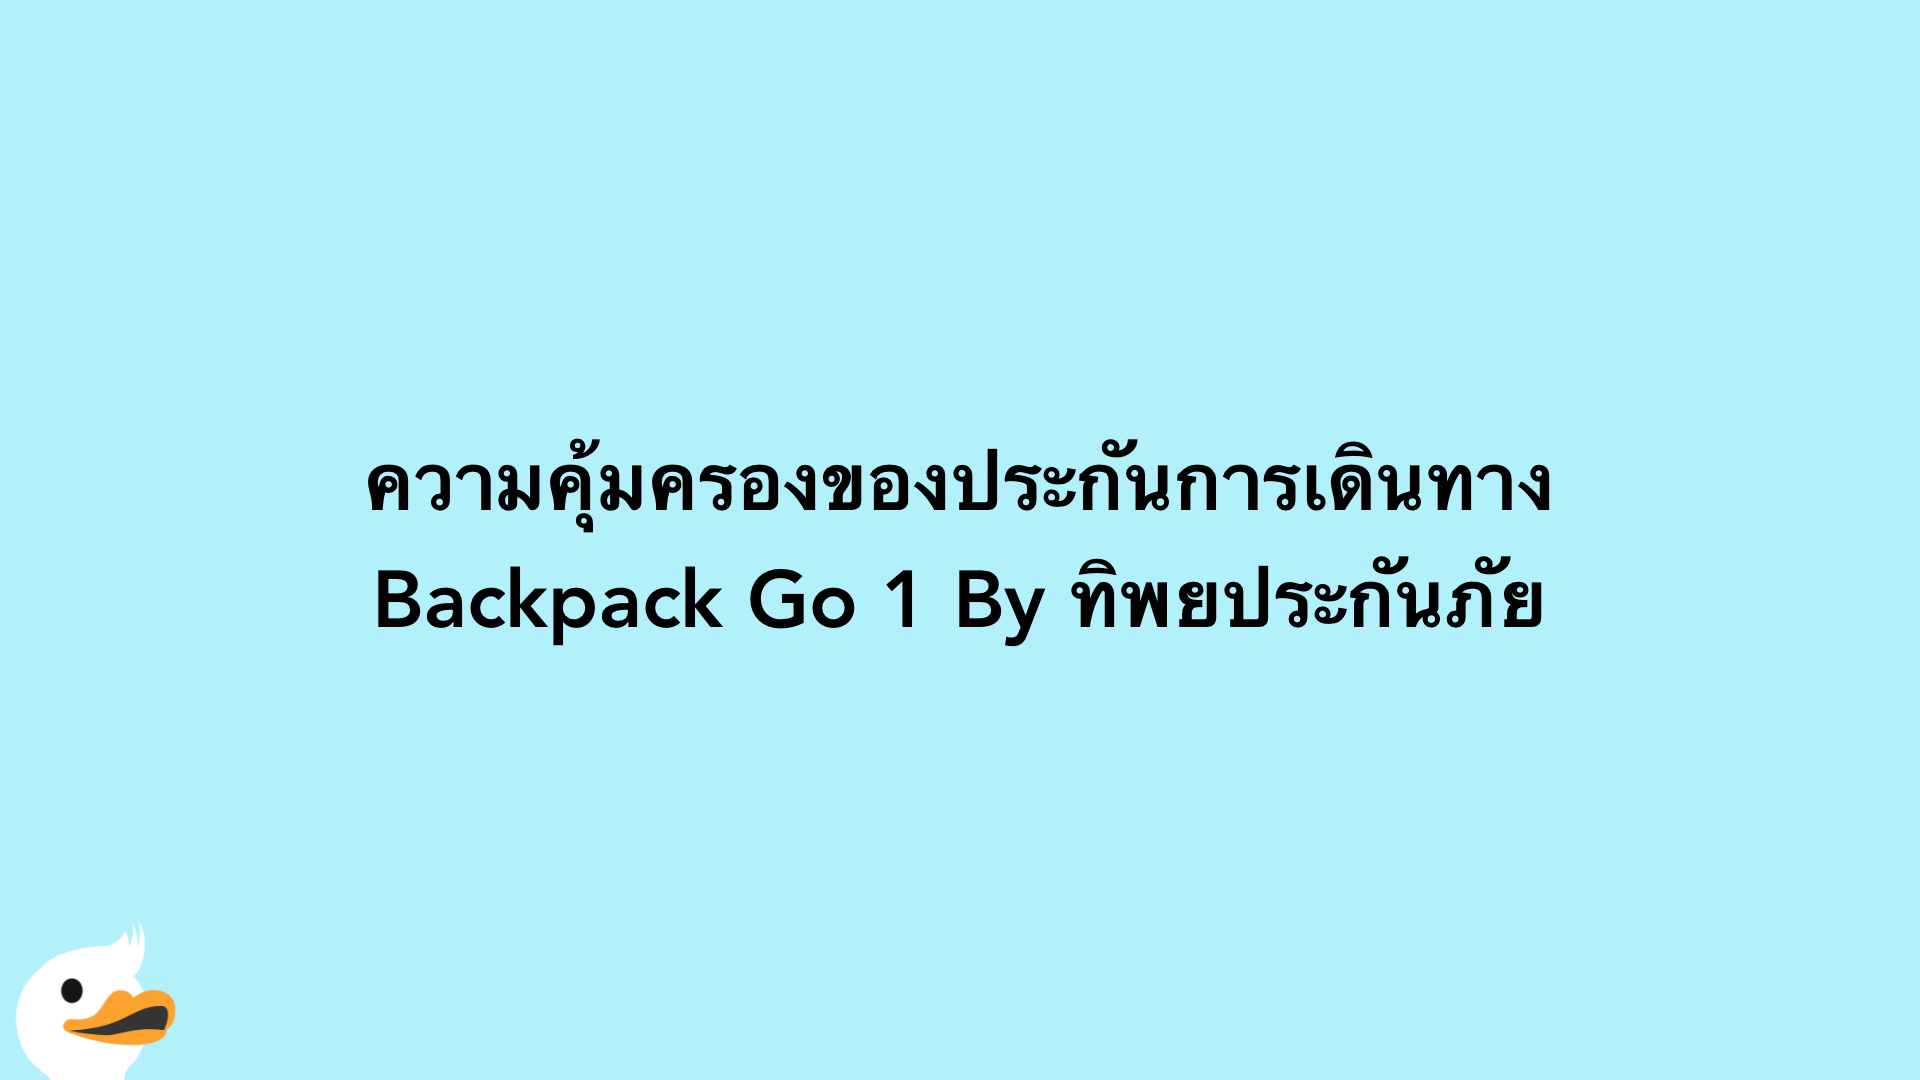 ความคุ้มครองของประกันการเดินทาง Backpack Go 1 By ทิพยประกันภัย